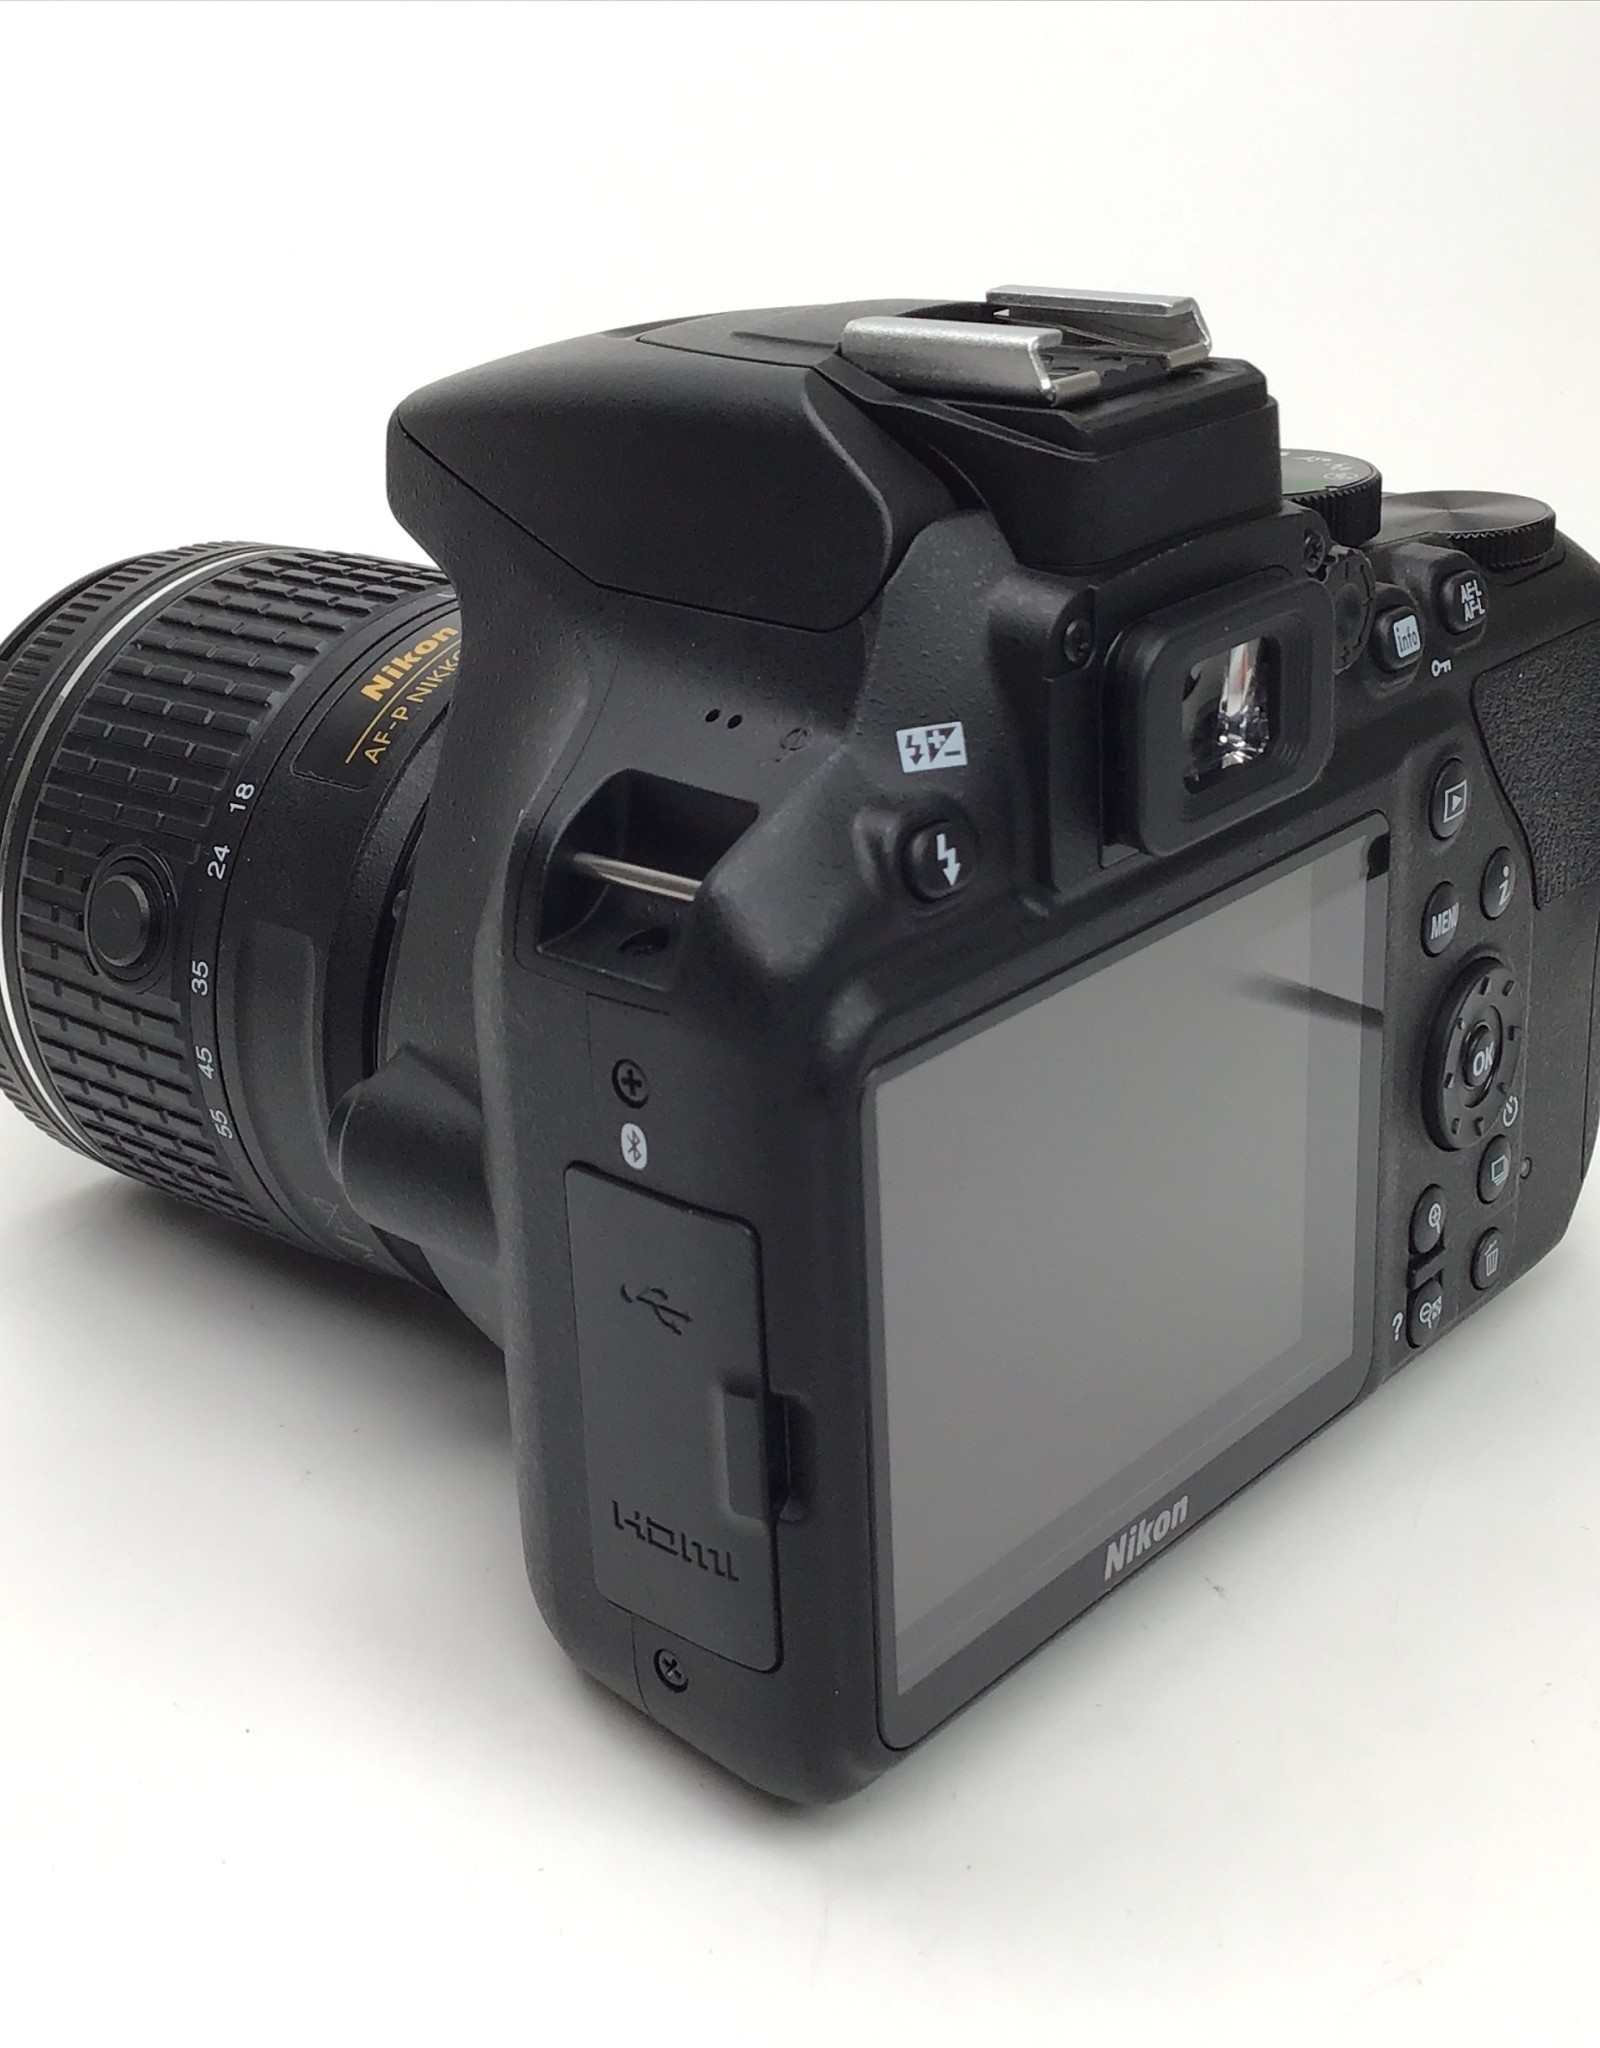 NIKON Nikon D3500 Camera with AF-P 18-55mm VR Used Good